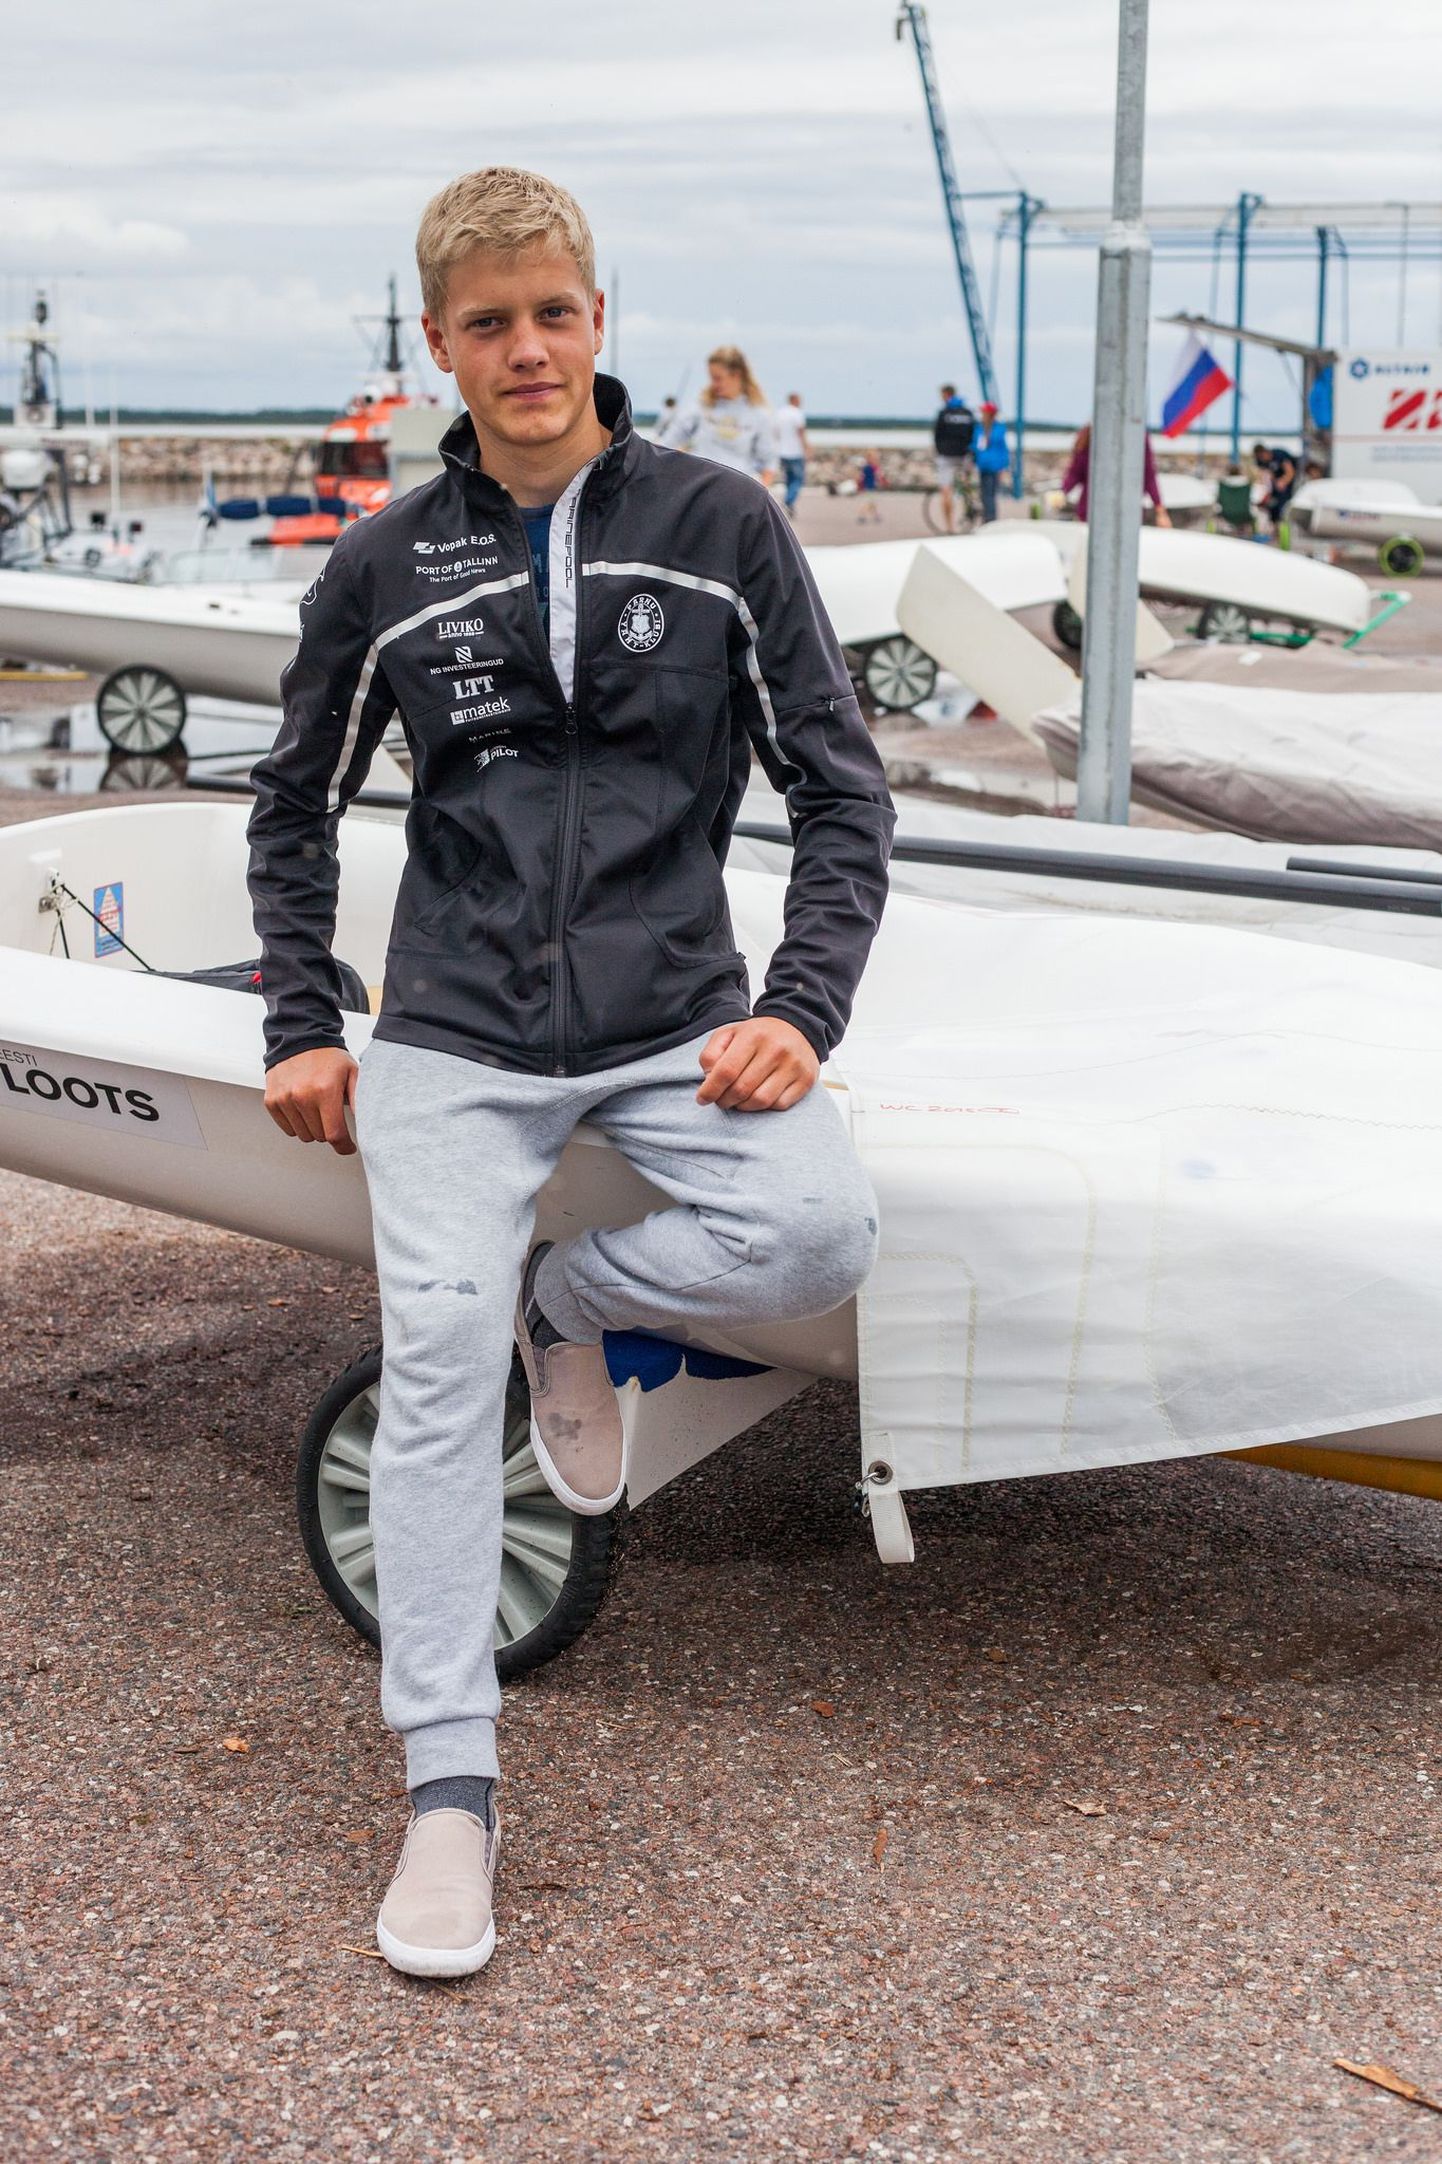 Pärnu purjetaja Keith Luur on Euroopa karikasarjas enne viimast etappi  kolmandal positsioonil.